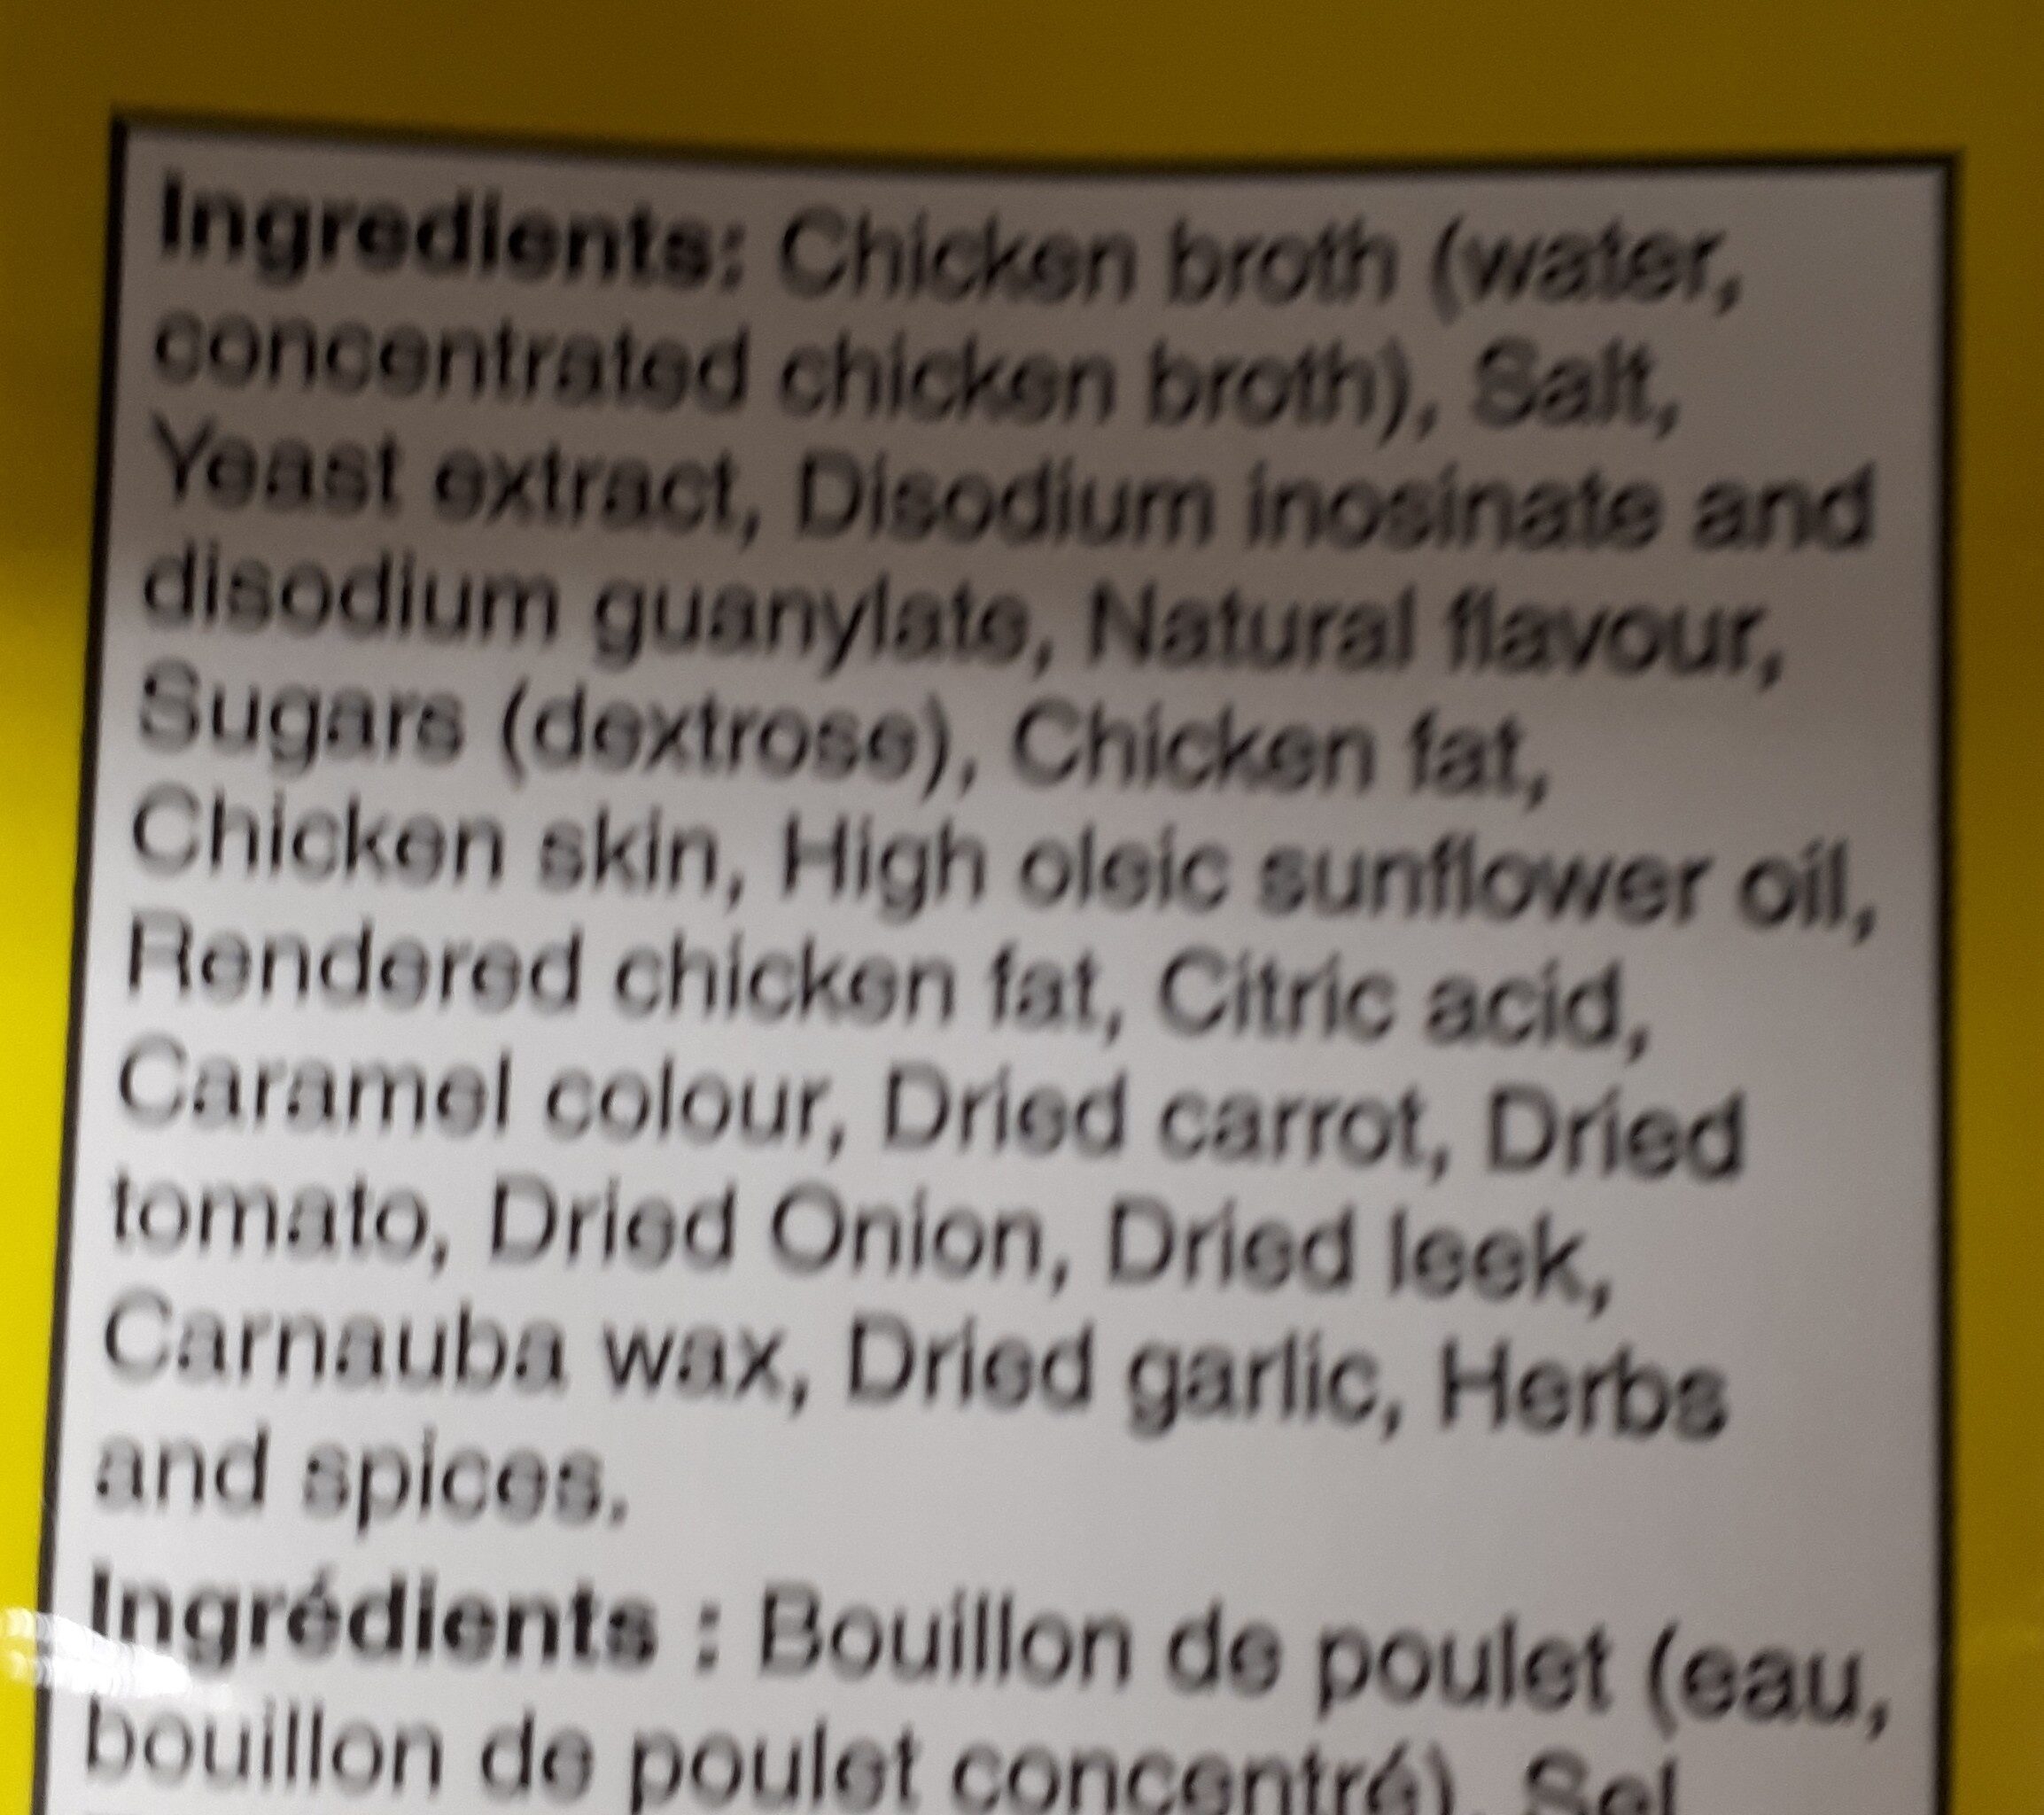 Reduced Sodium Chicken Broth - Ingrédients